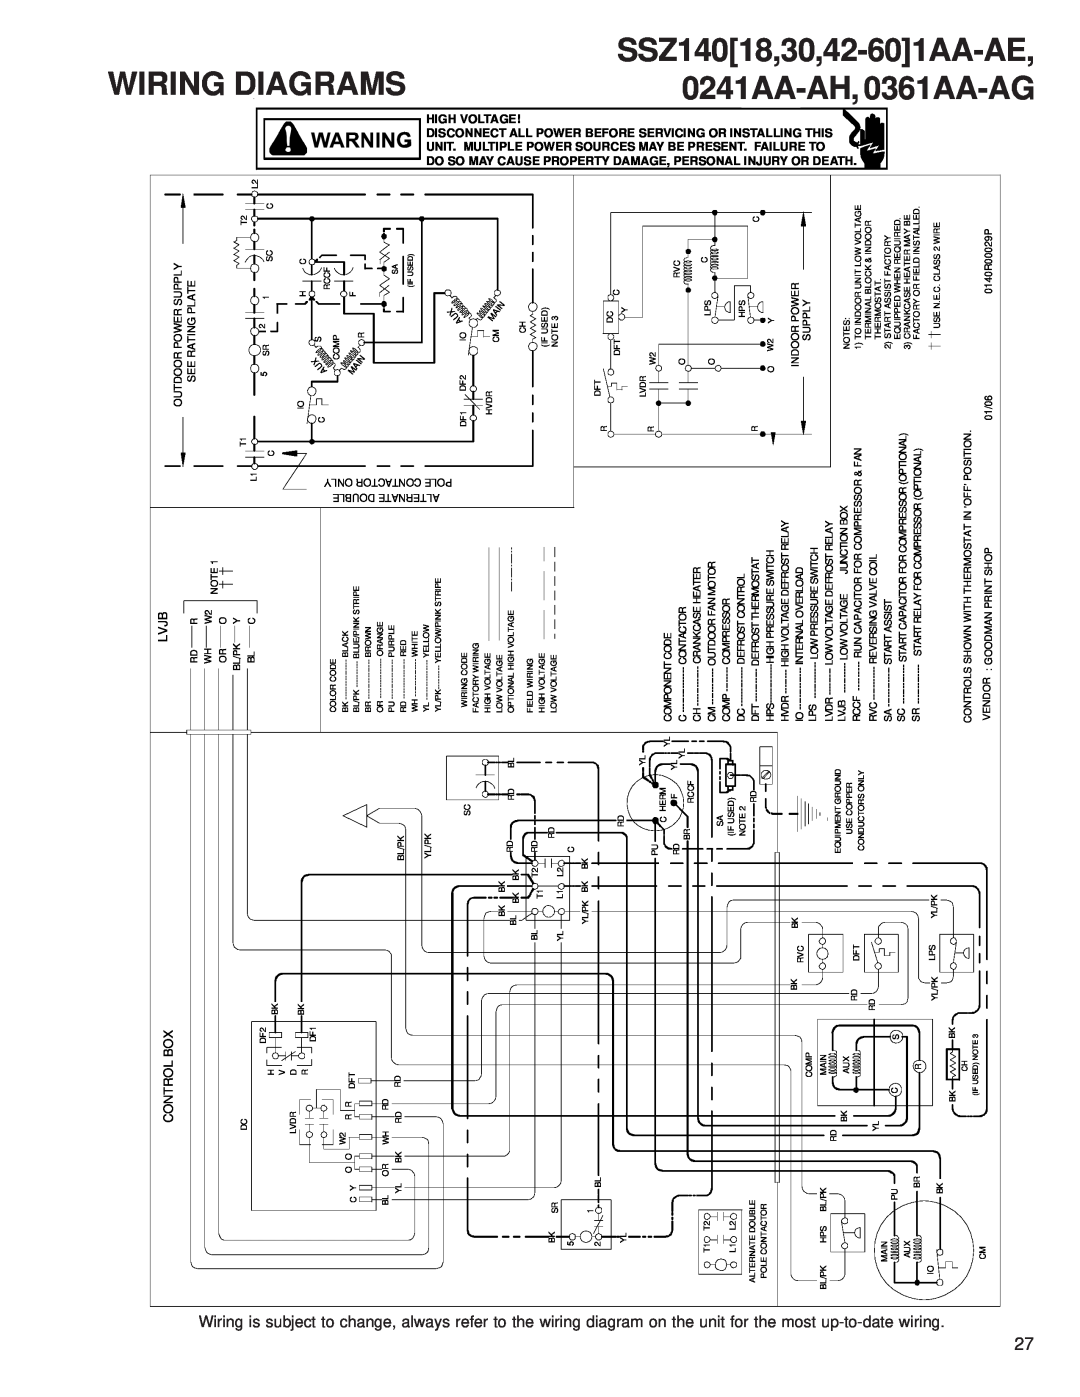 Goodman Mfg SSZ 14 SEER service manual Wiring, SSZ14018,30,42-601AA-AE, 0241AA-AH, 0361AA-AG, to change, always 